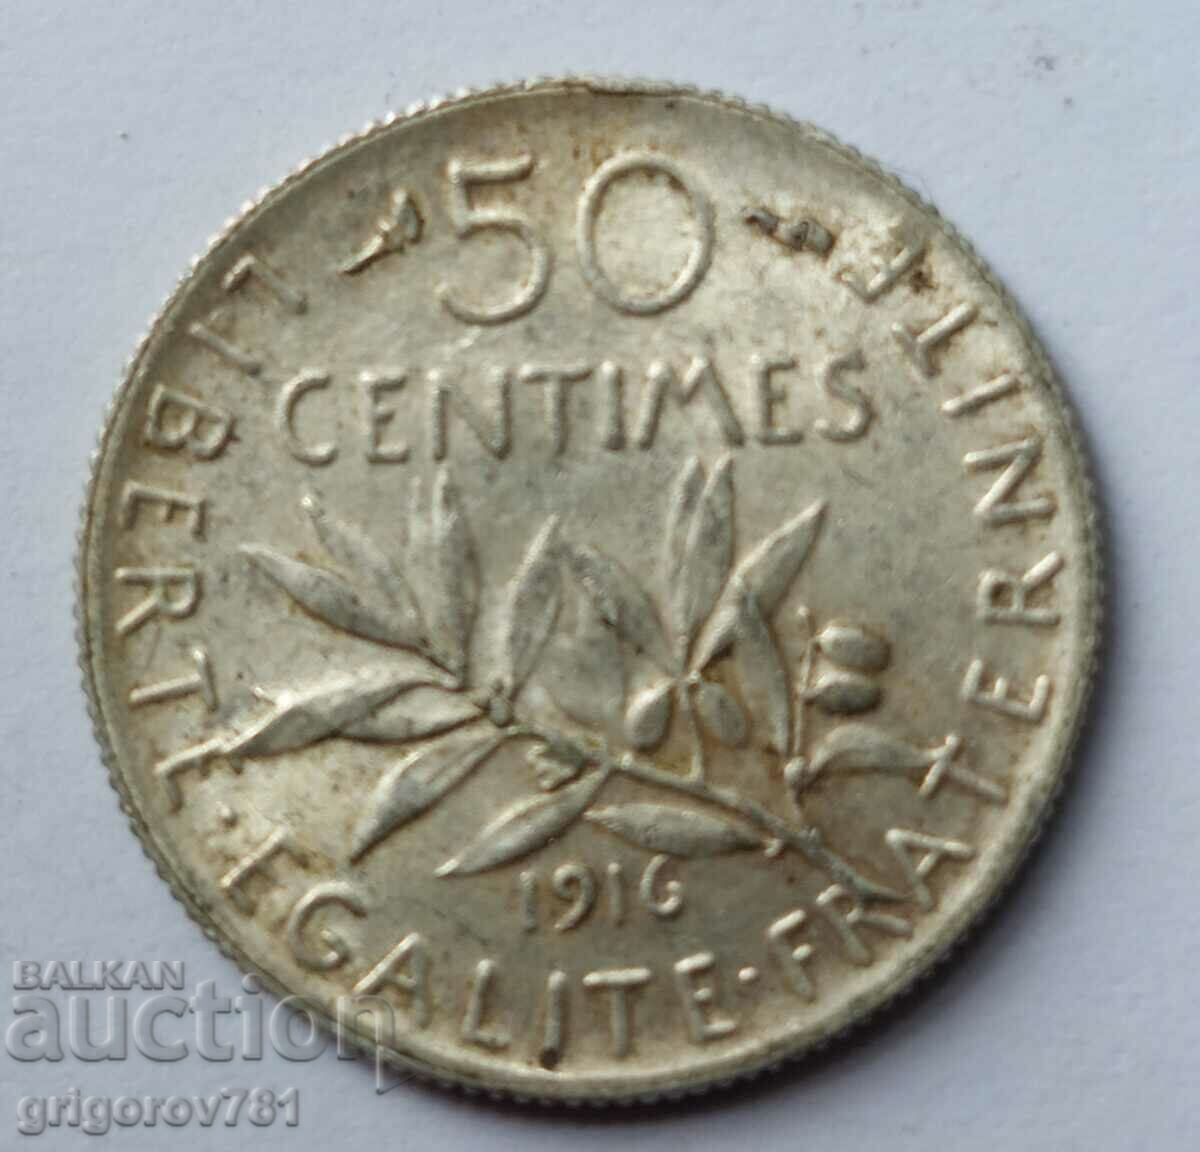 Ασημένιο 50 εκατοστά Γαλλία 1916 - ασημένιο νόμισμα №7